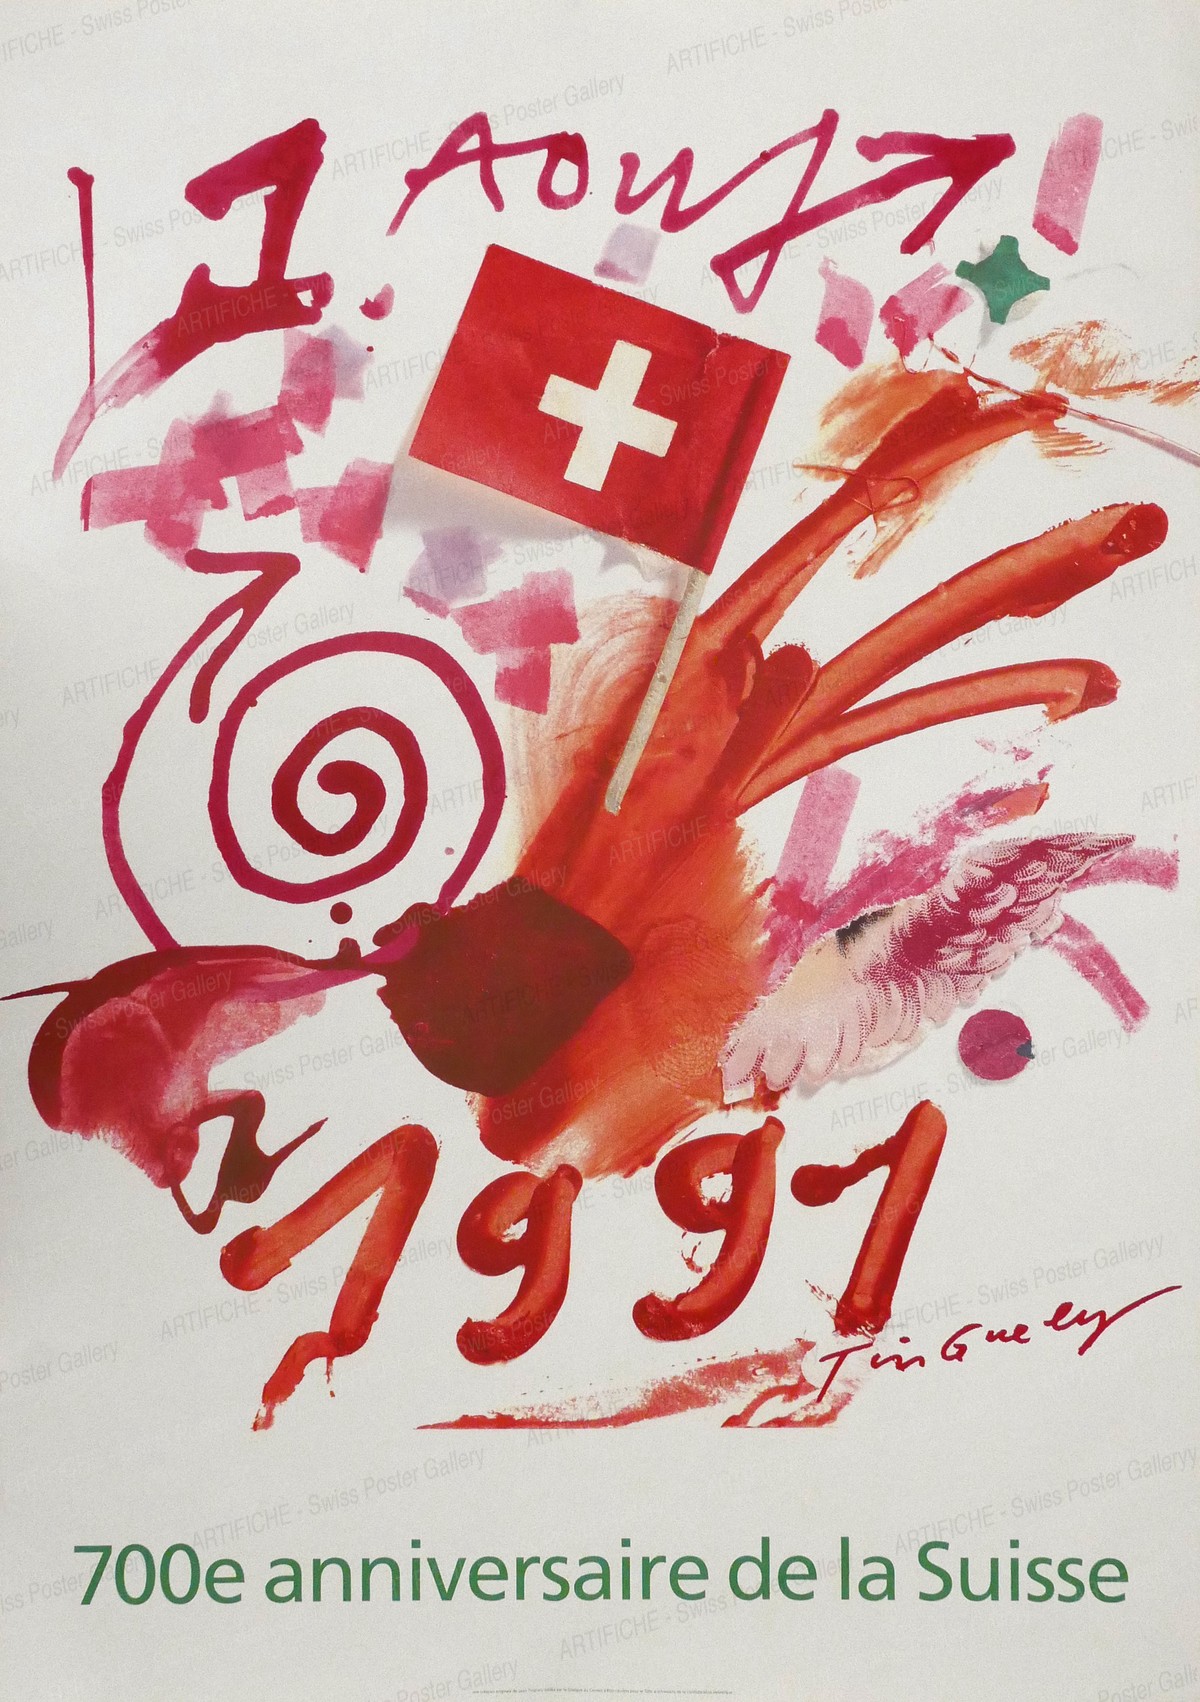 700e anniversaire de la Suisse – 1 Aout 1991, Jean Tinguely